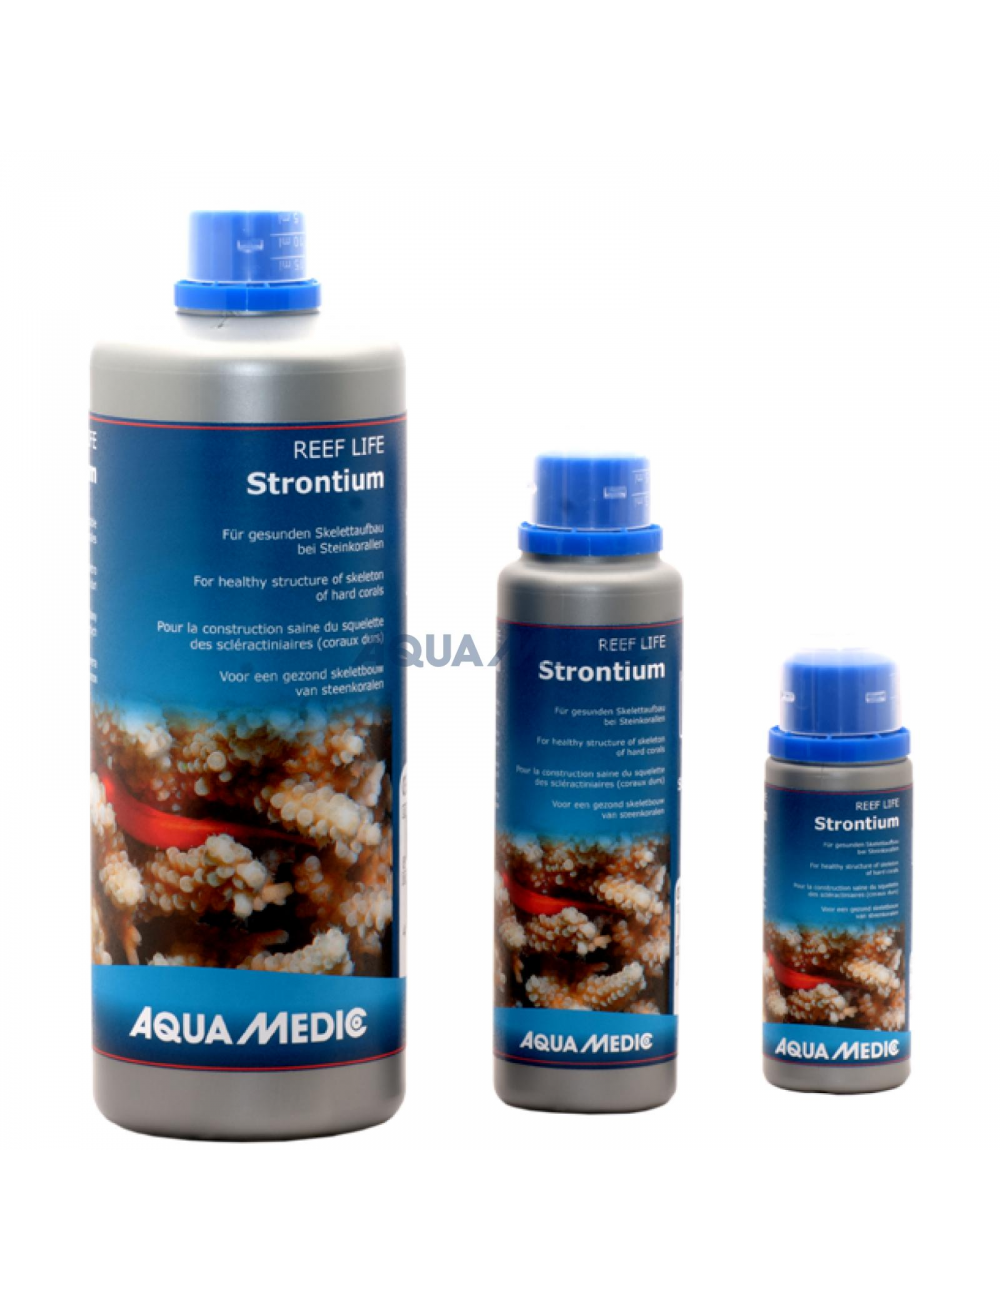 AQUA-MEDIC - REEF LIFE Strontium - 250ml - Solution pour la croissance des coraux